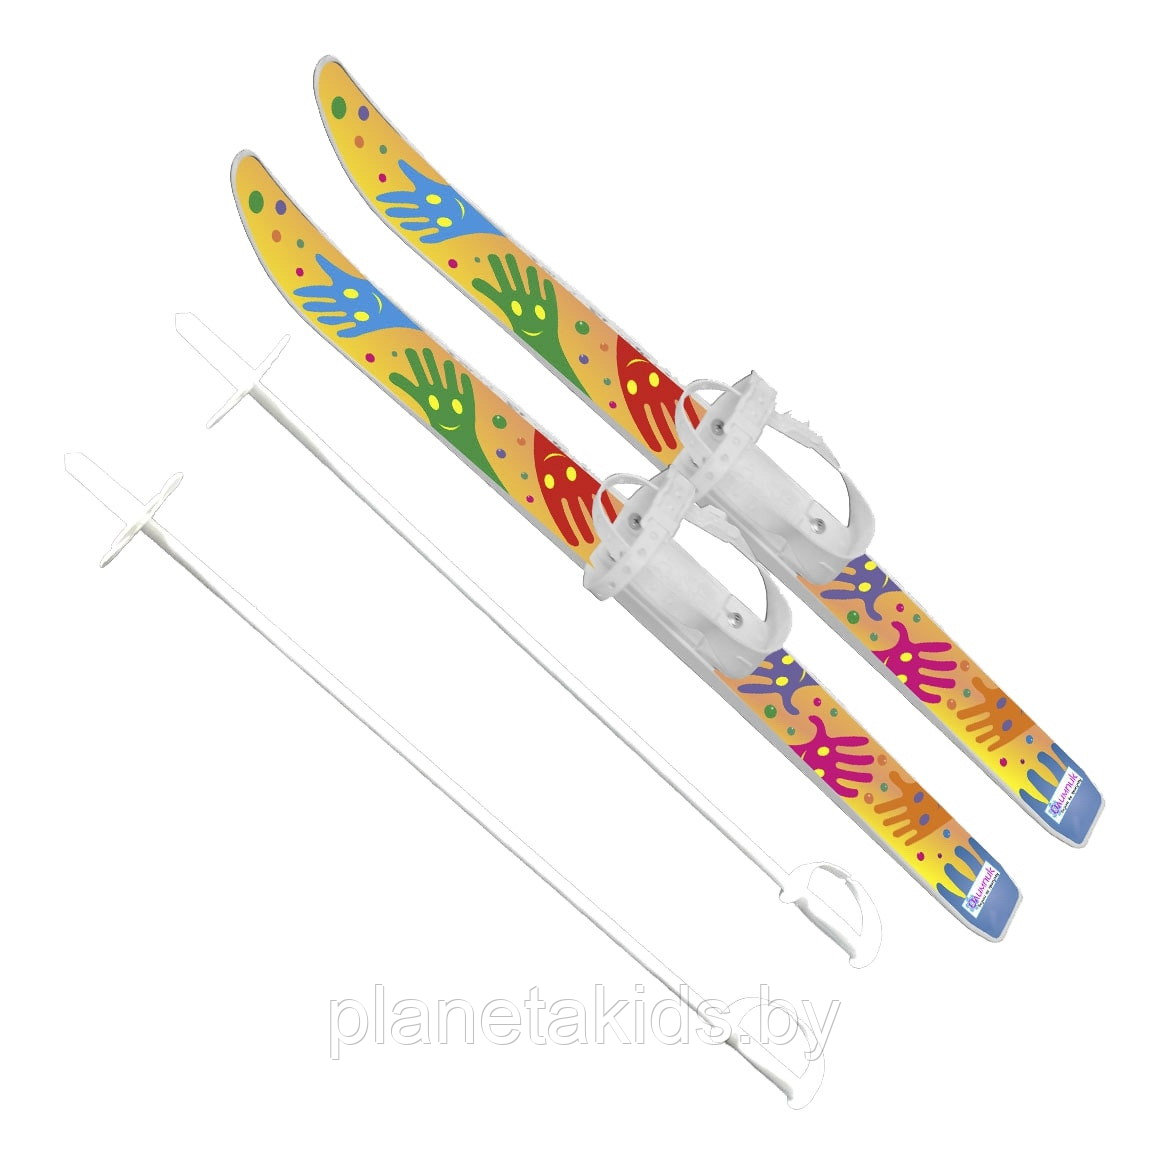 Лыжи детские "Лыжики пыжики"  с палками (в сетке, длина 75 см) 330085-00